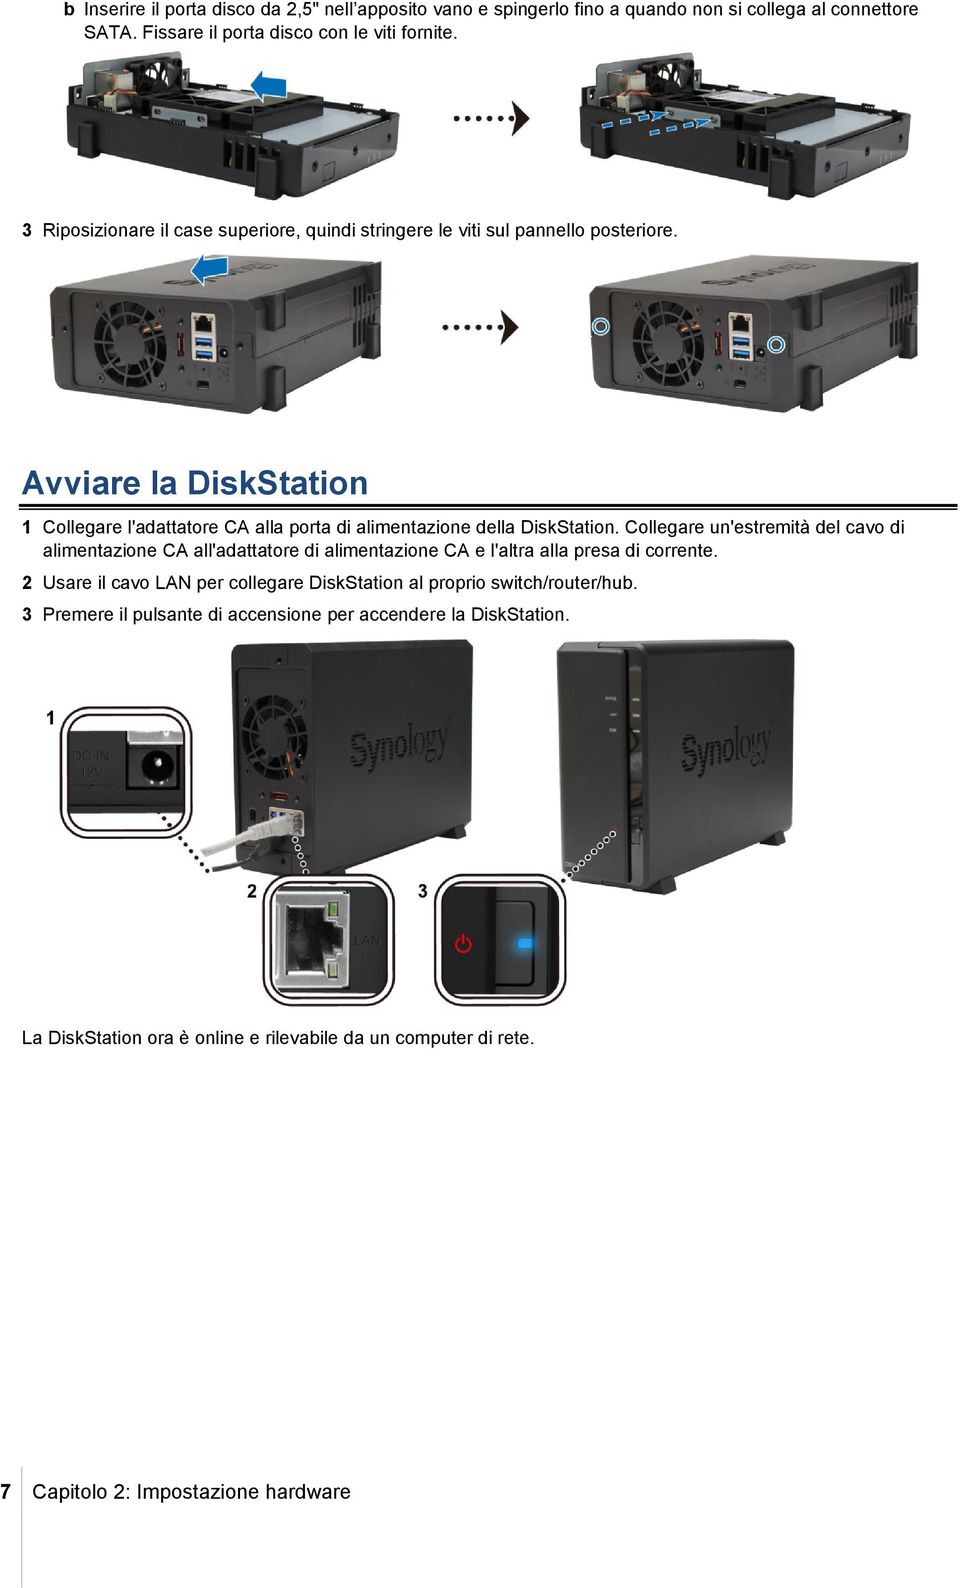 Avviare la DiskStation 1 Collegare l'adattatore CA alla porta di alimentazione della DiskStation.